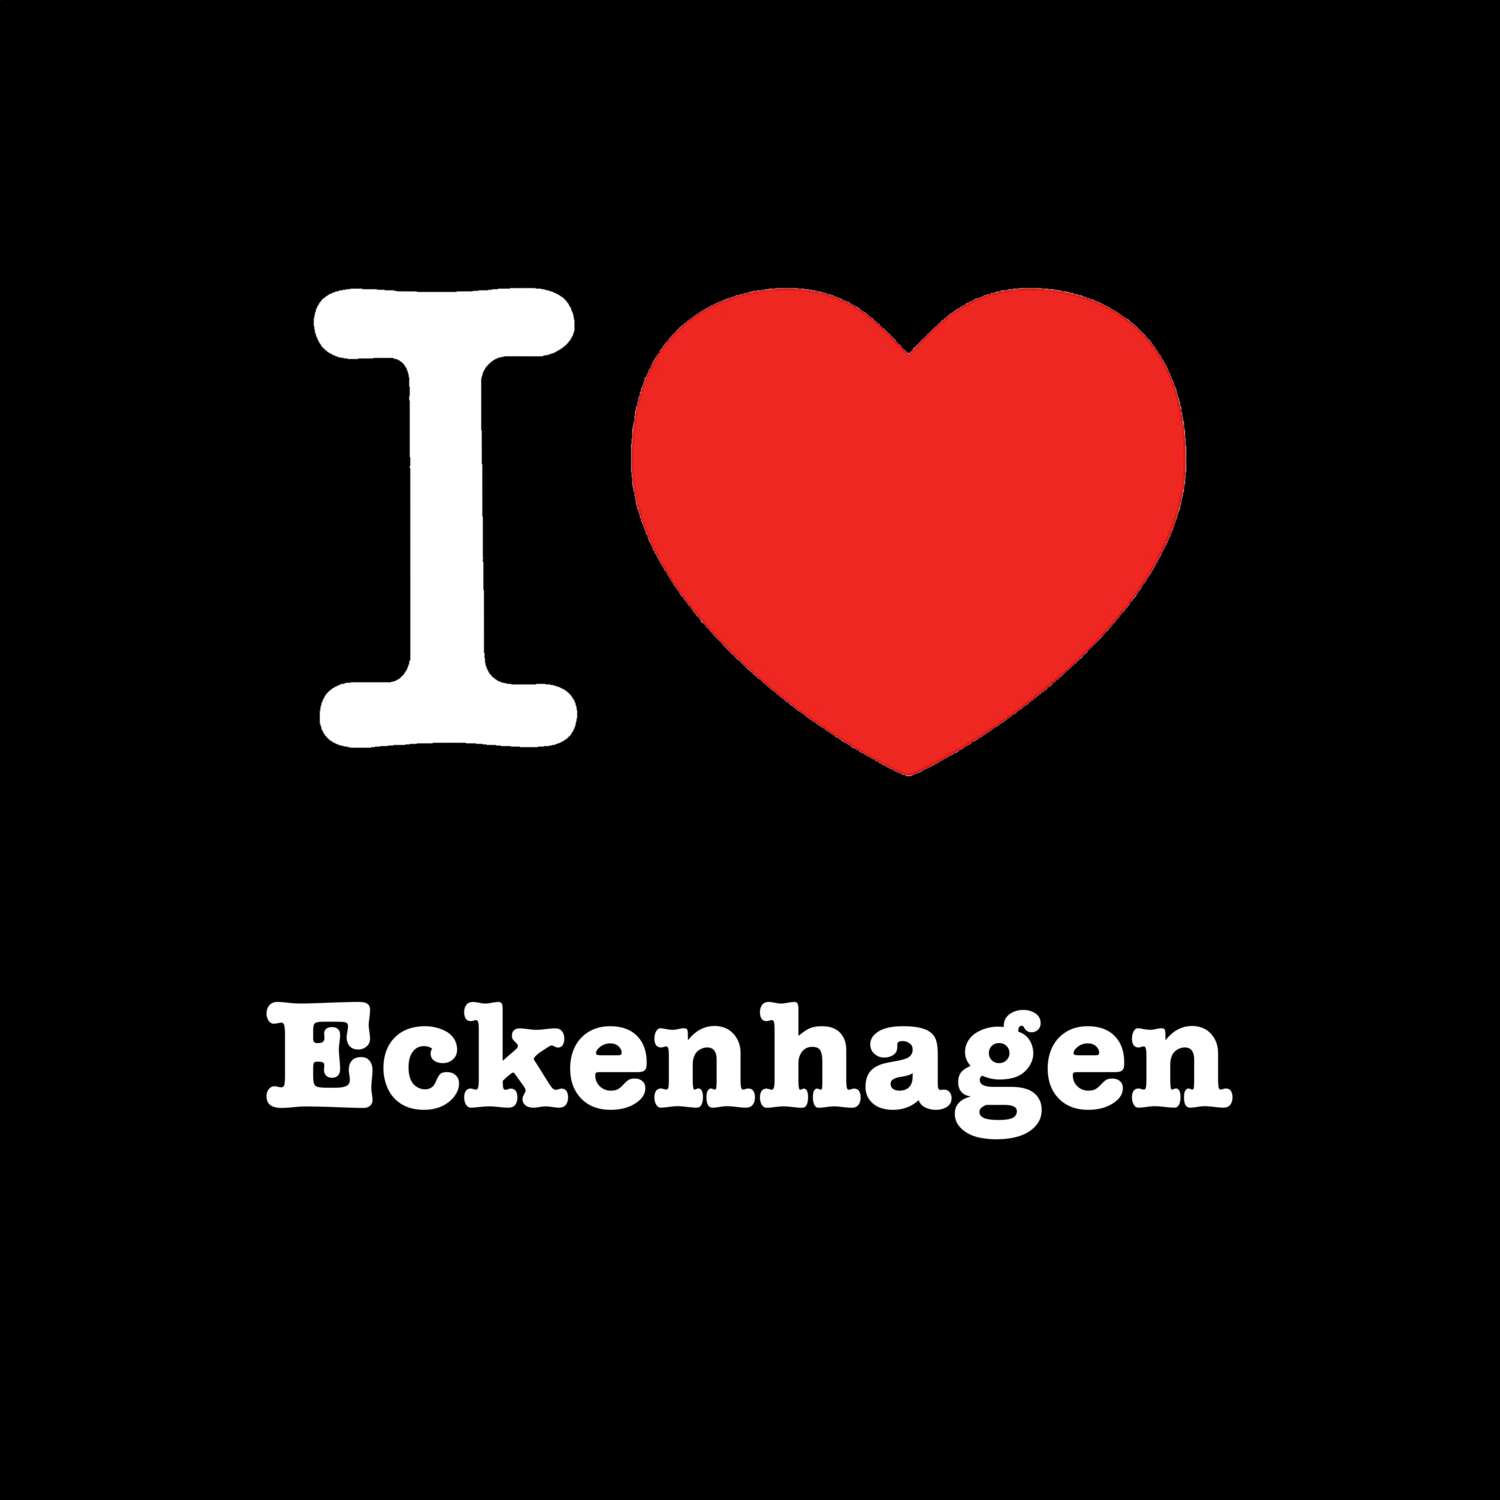 Eckenhagen T-Shirt »I love«